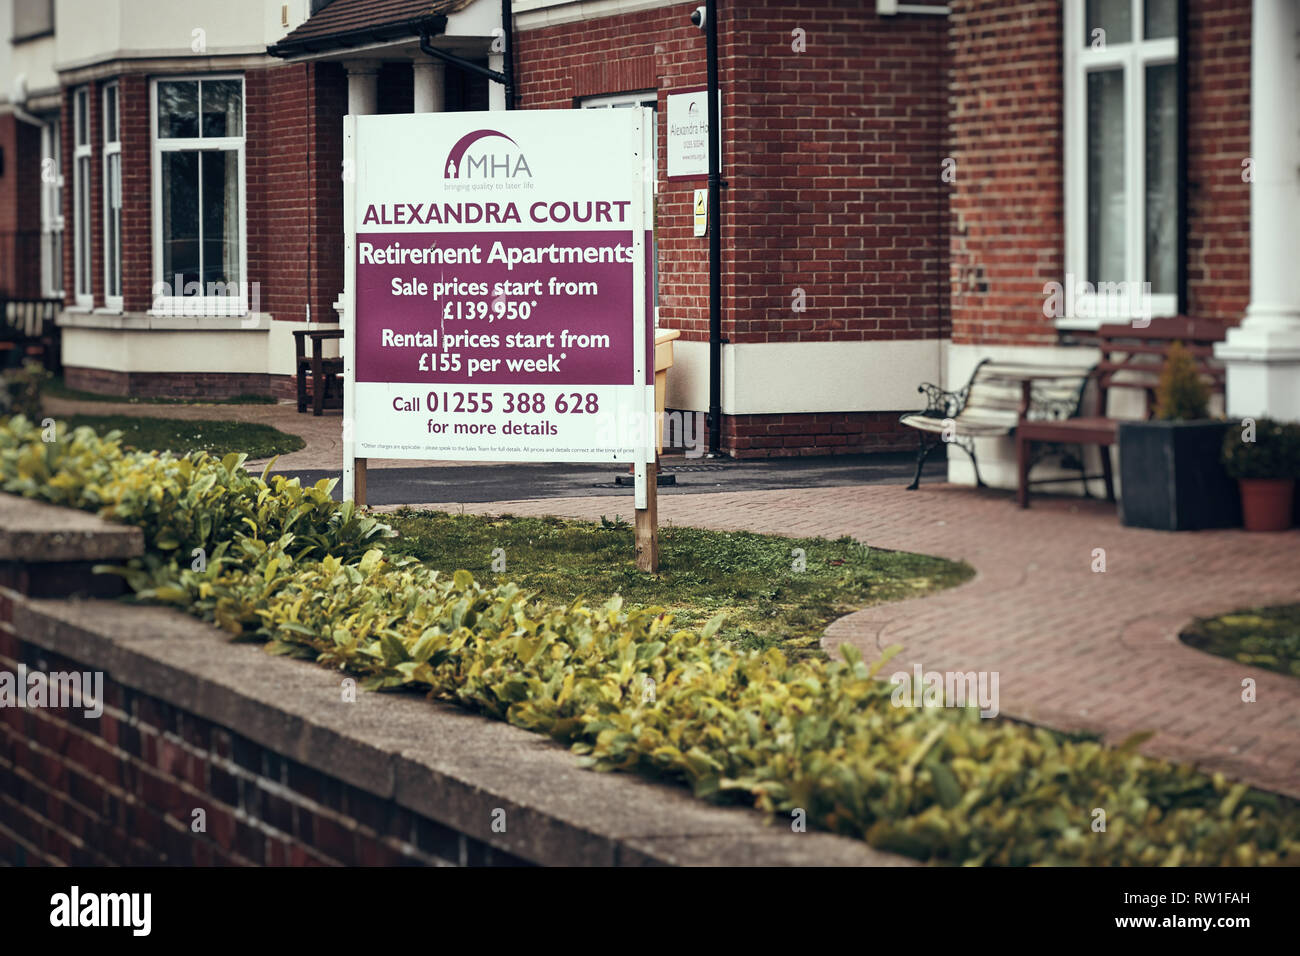 Harwich & Dovercourt, Essex, England - 3. März 2019: Äußere eines Care Home in Harwich mit einer Werbetafel für den Ruhestand Apartments mit pric Stockfoto